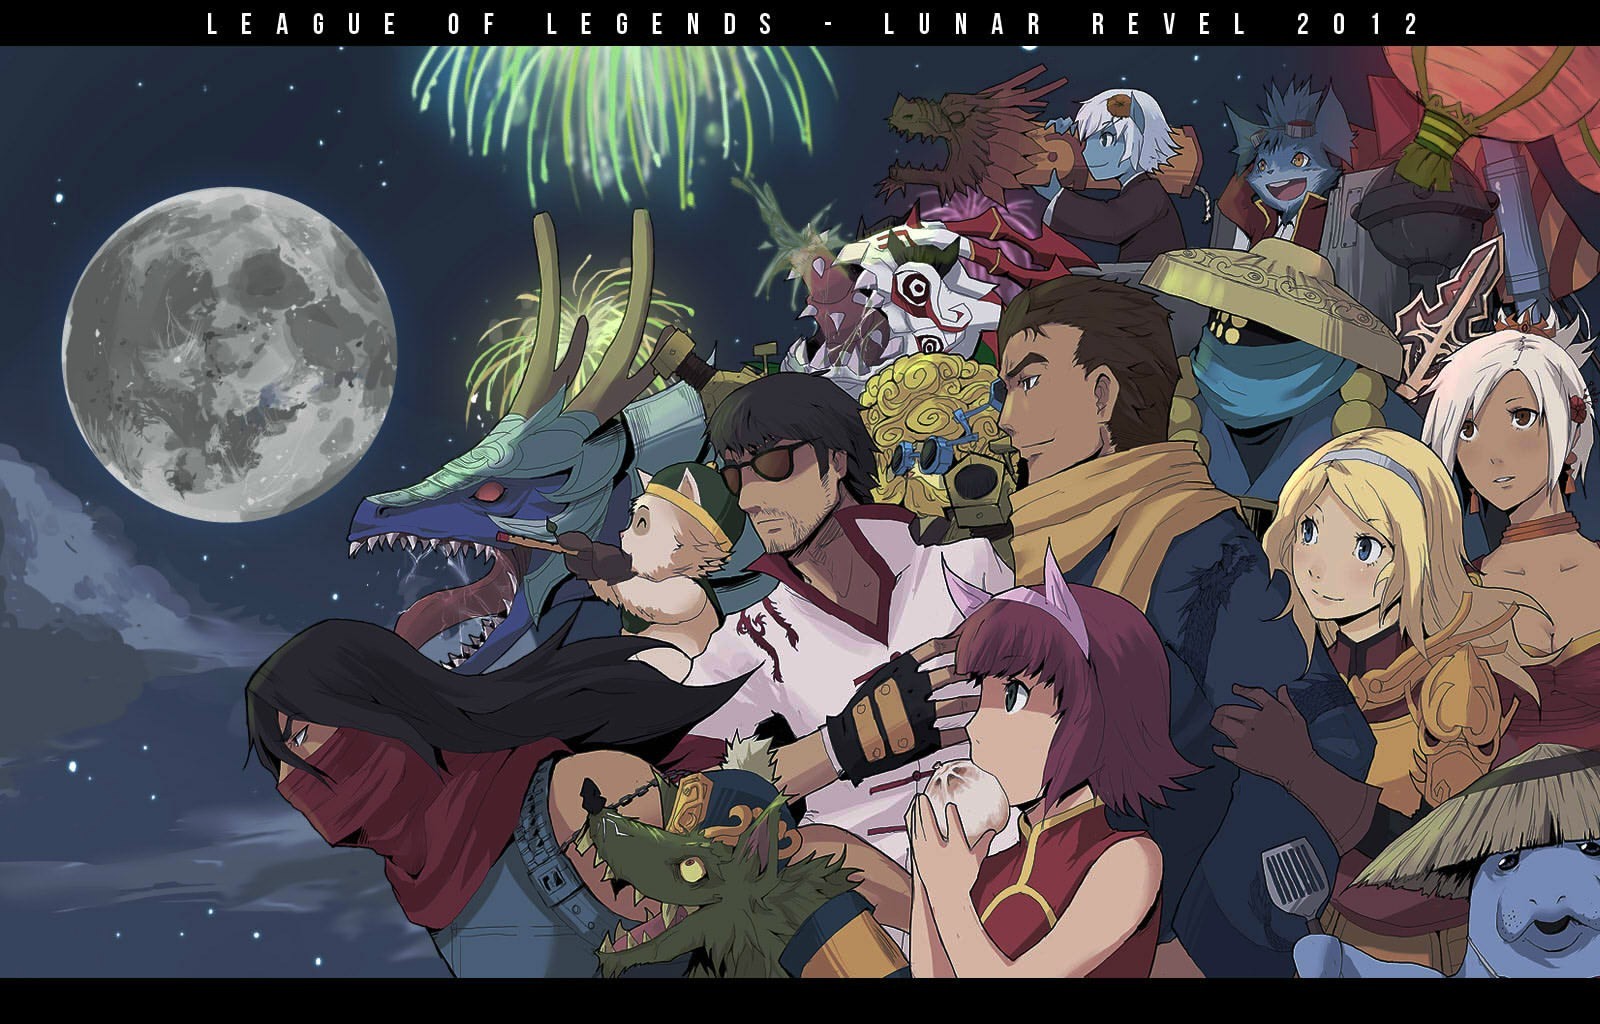 Wallpaper - Anime Jax League Of Legends - HD Wallpaper 